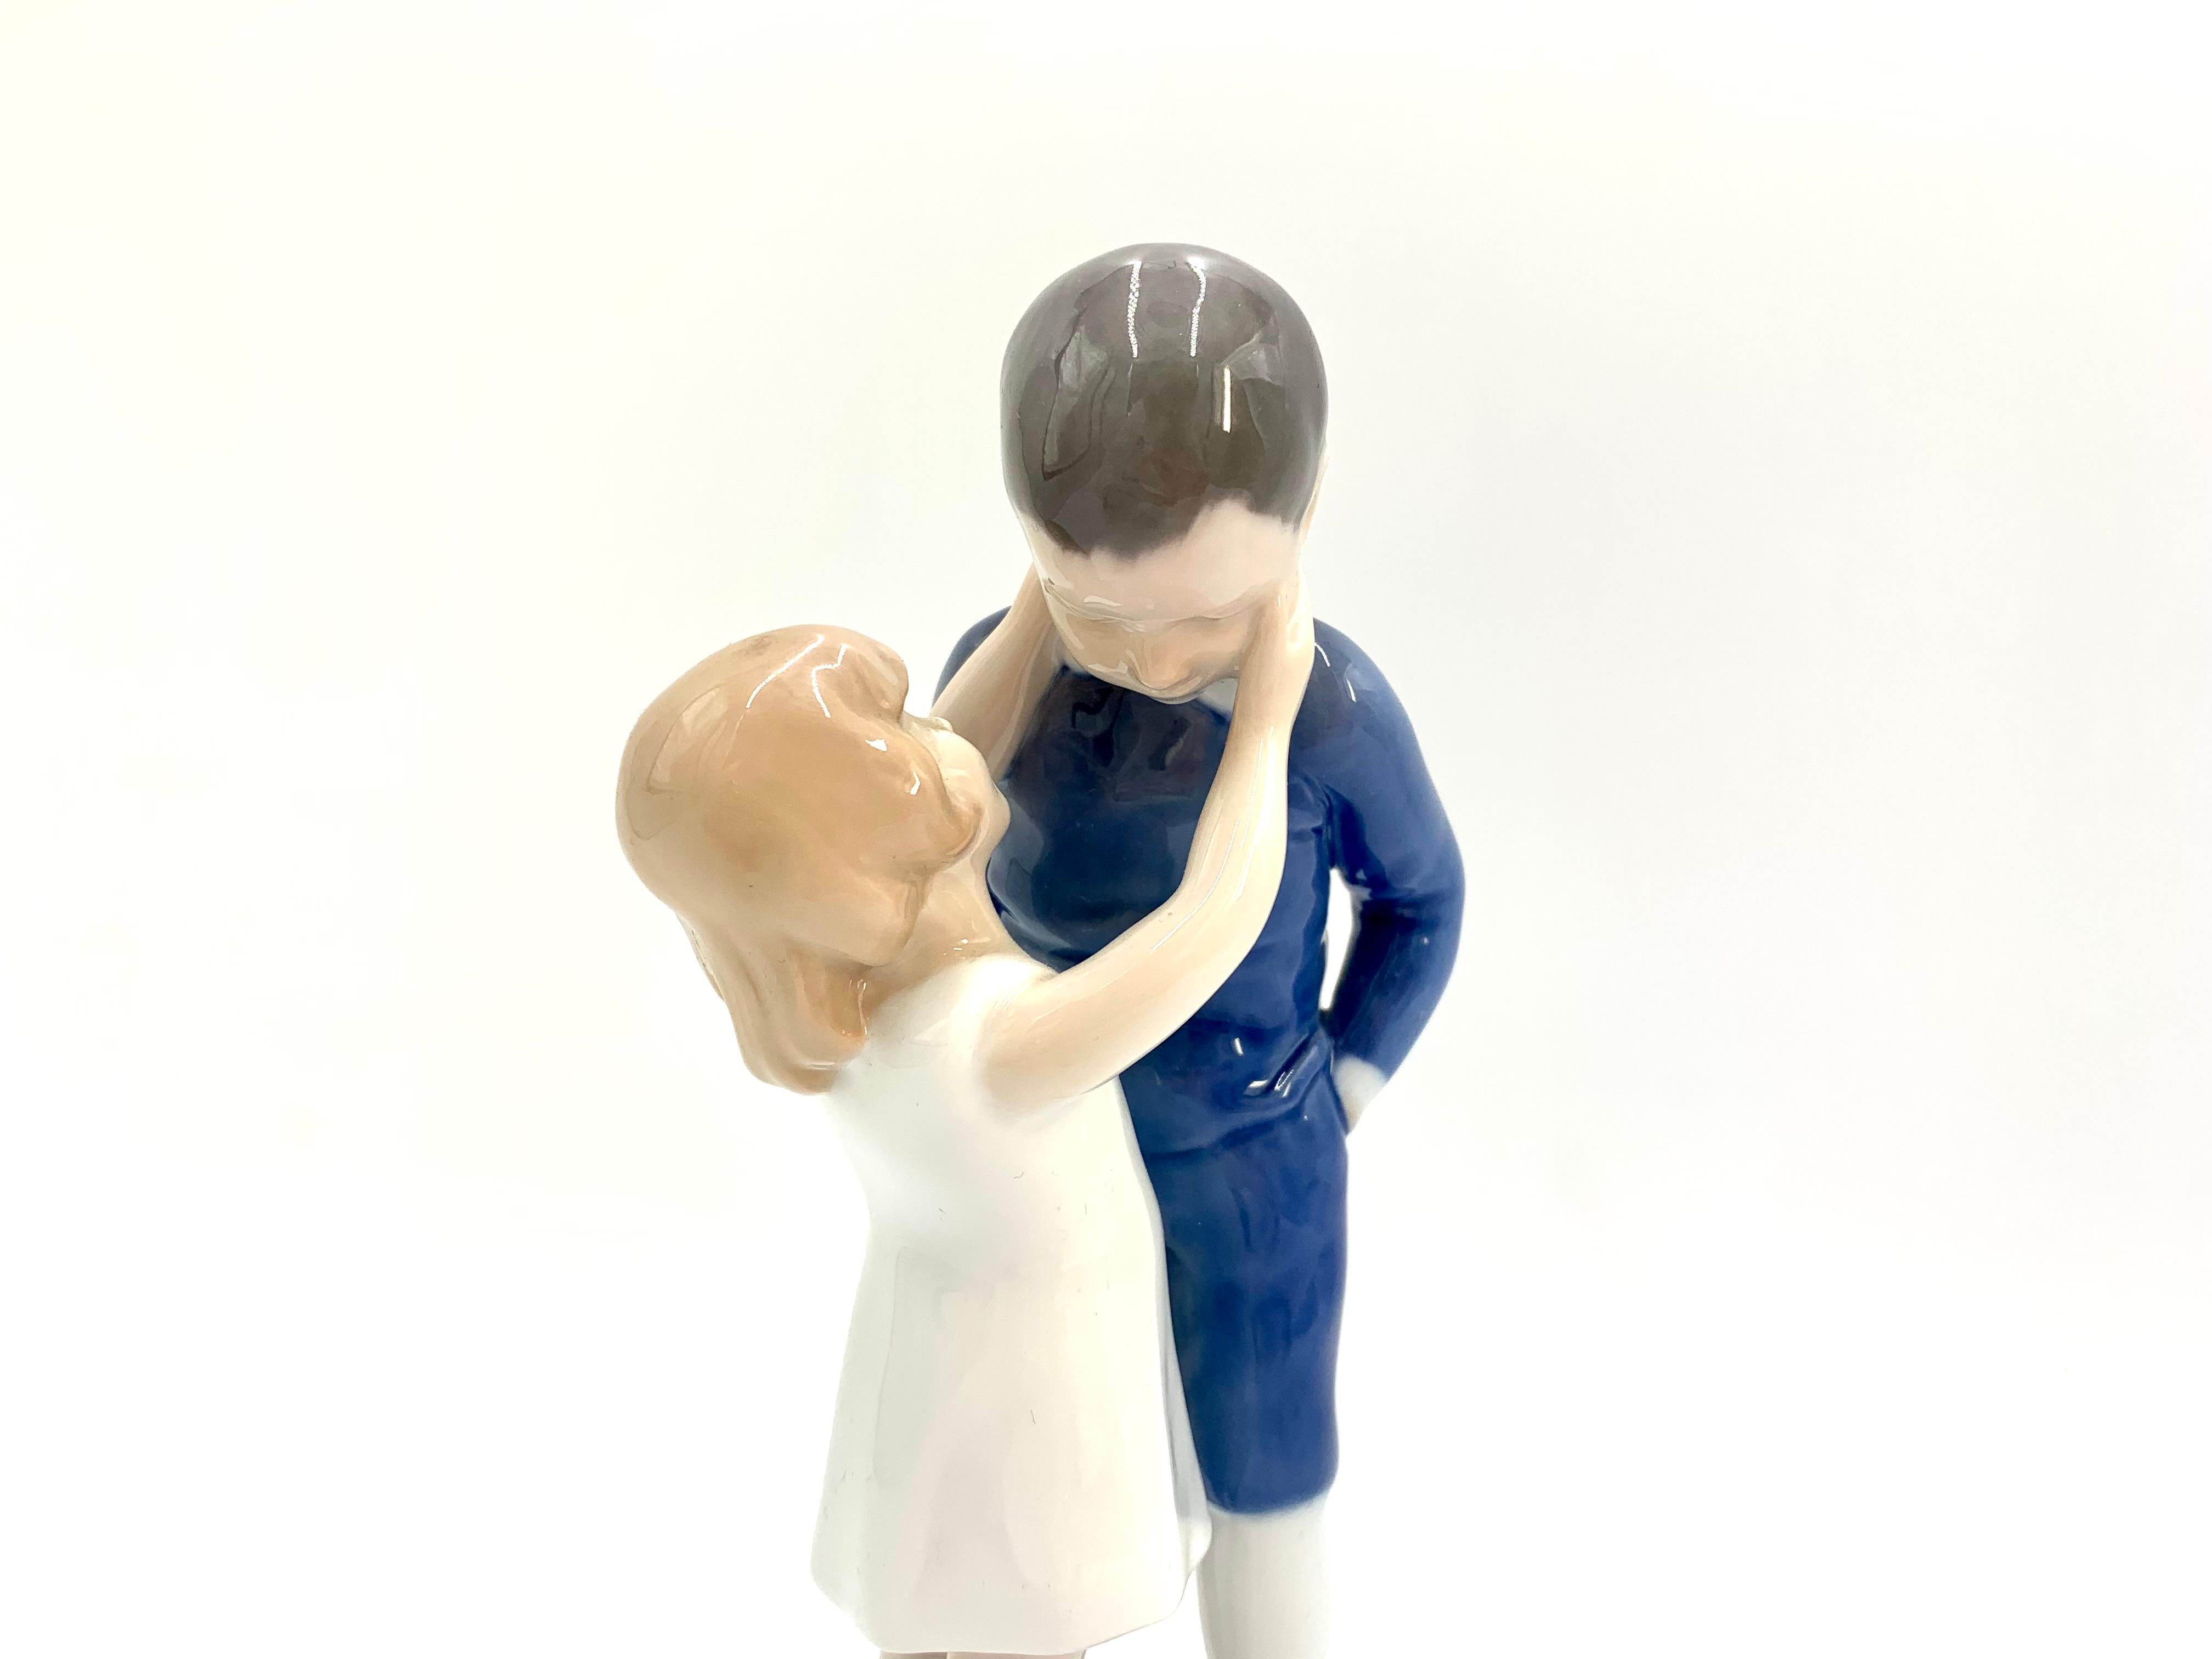 Figurine en porcelaine d'une fille avec un garçon

Fabriqué au Danemark par Bing & Grondahl

Produit en 1960-70

Numéro de modèle : 1781

Très bon état, aucun dommage

Mesures : Hauteur 21cm, diamètre 8.5cm.